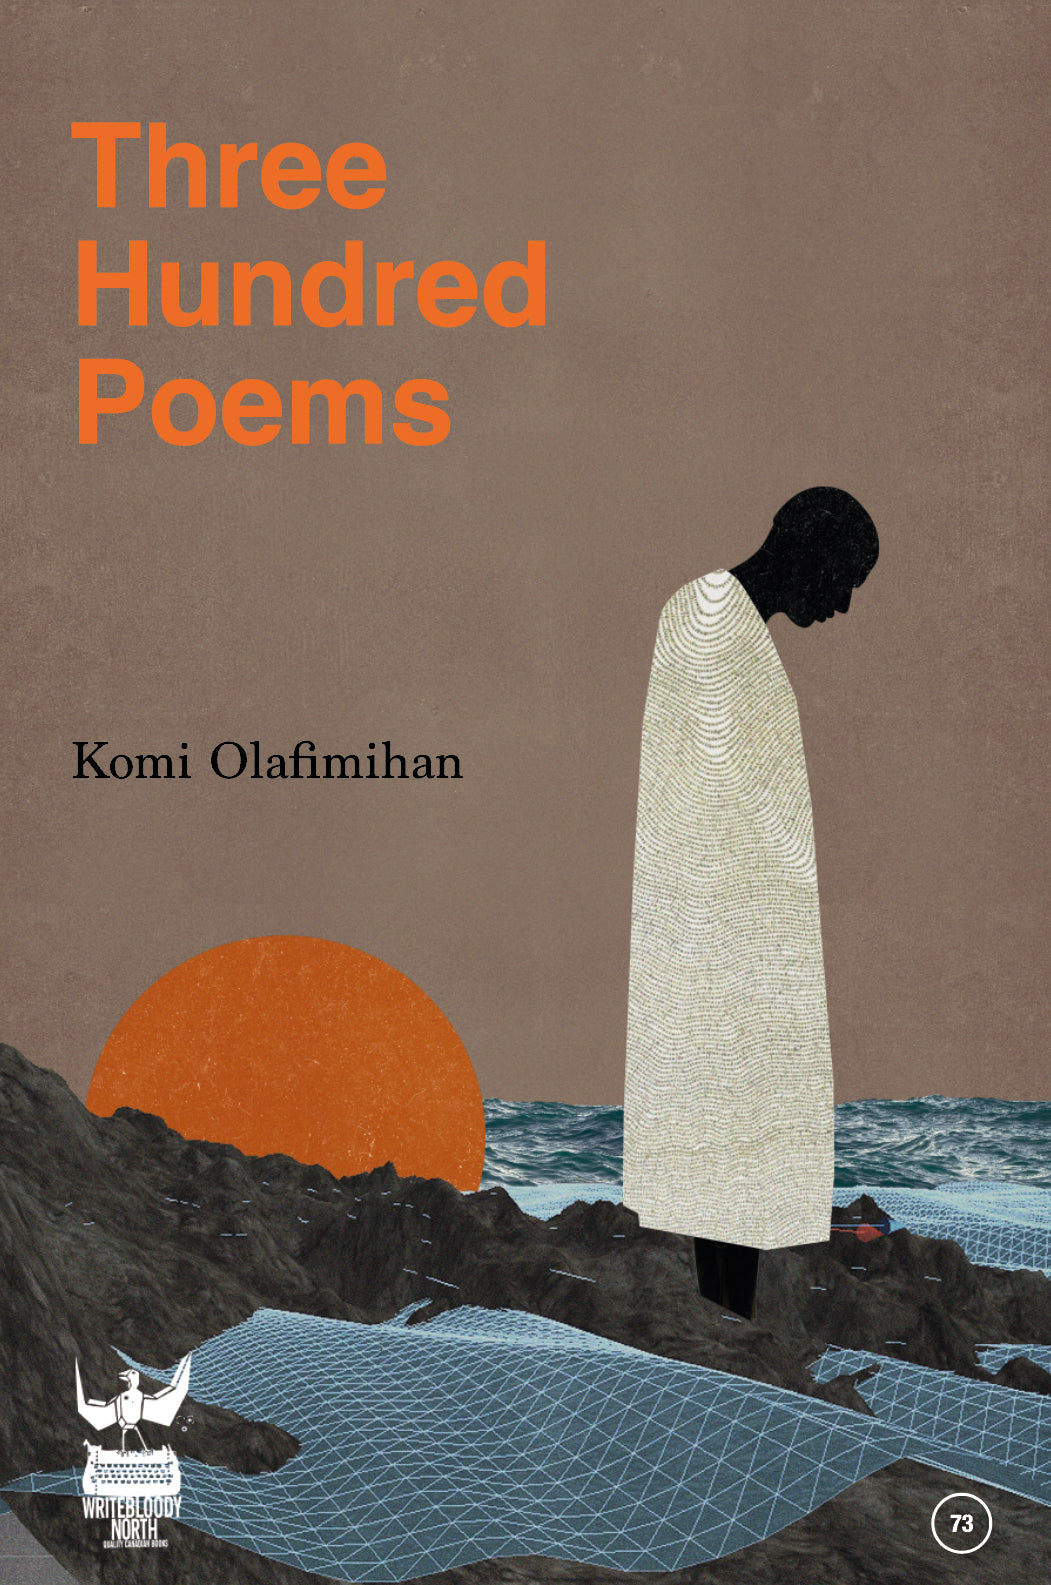 300 Poems by Komi Olafimihan